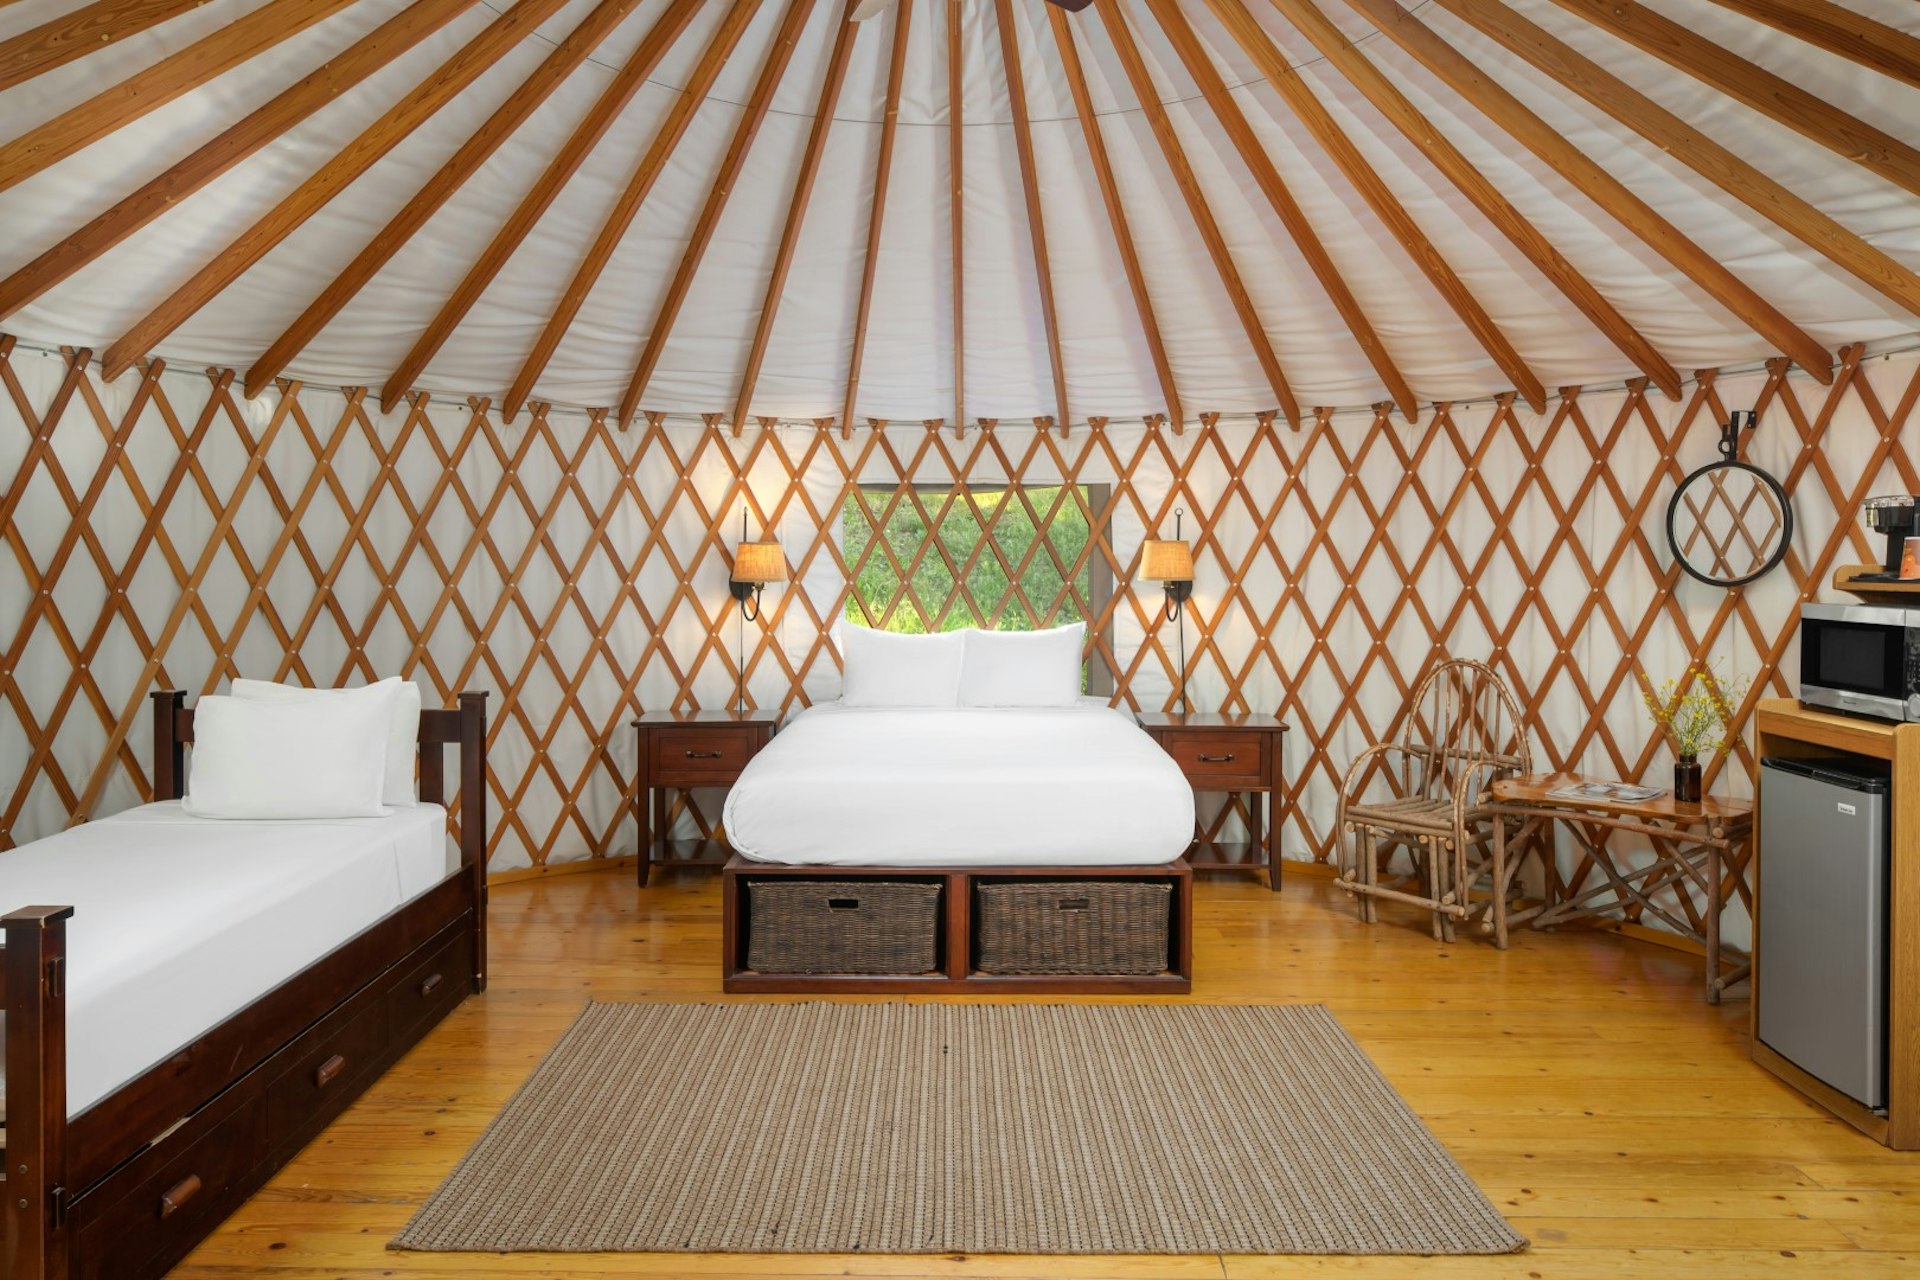 A bed with white sheets in a luxury yurt at El Capitan Canyon, Santa Barbara, California, USA